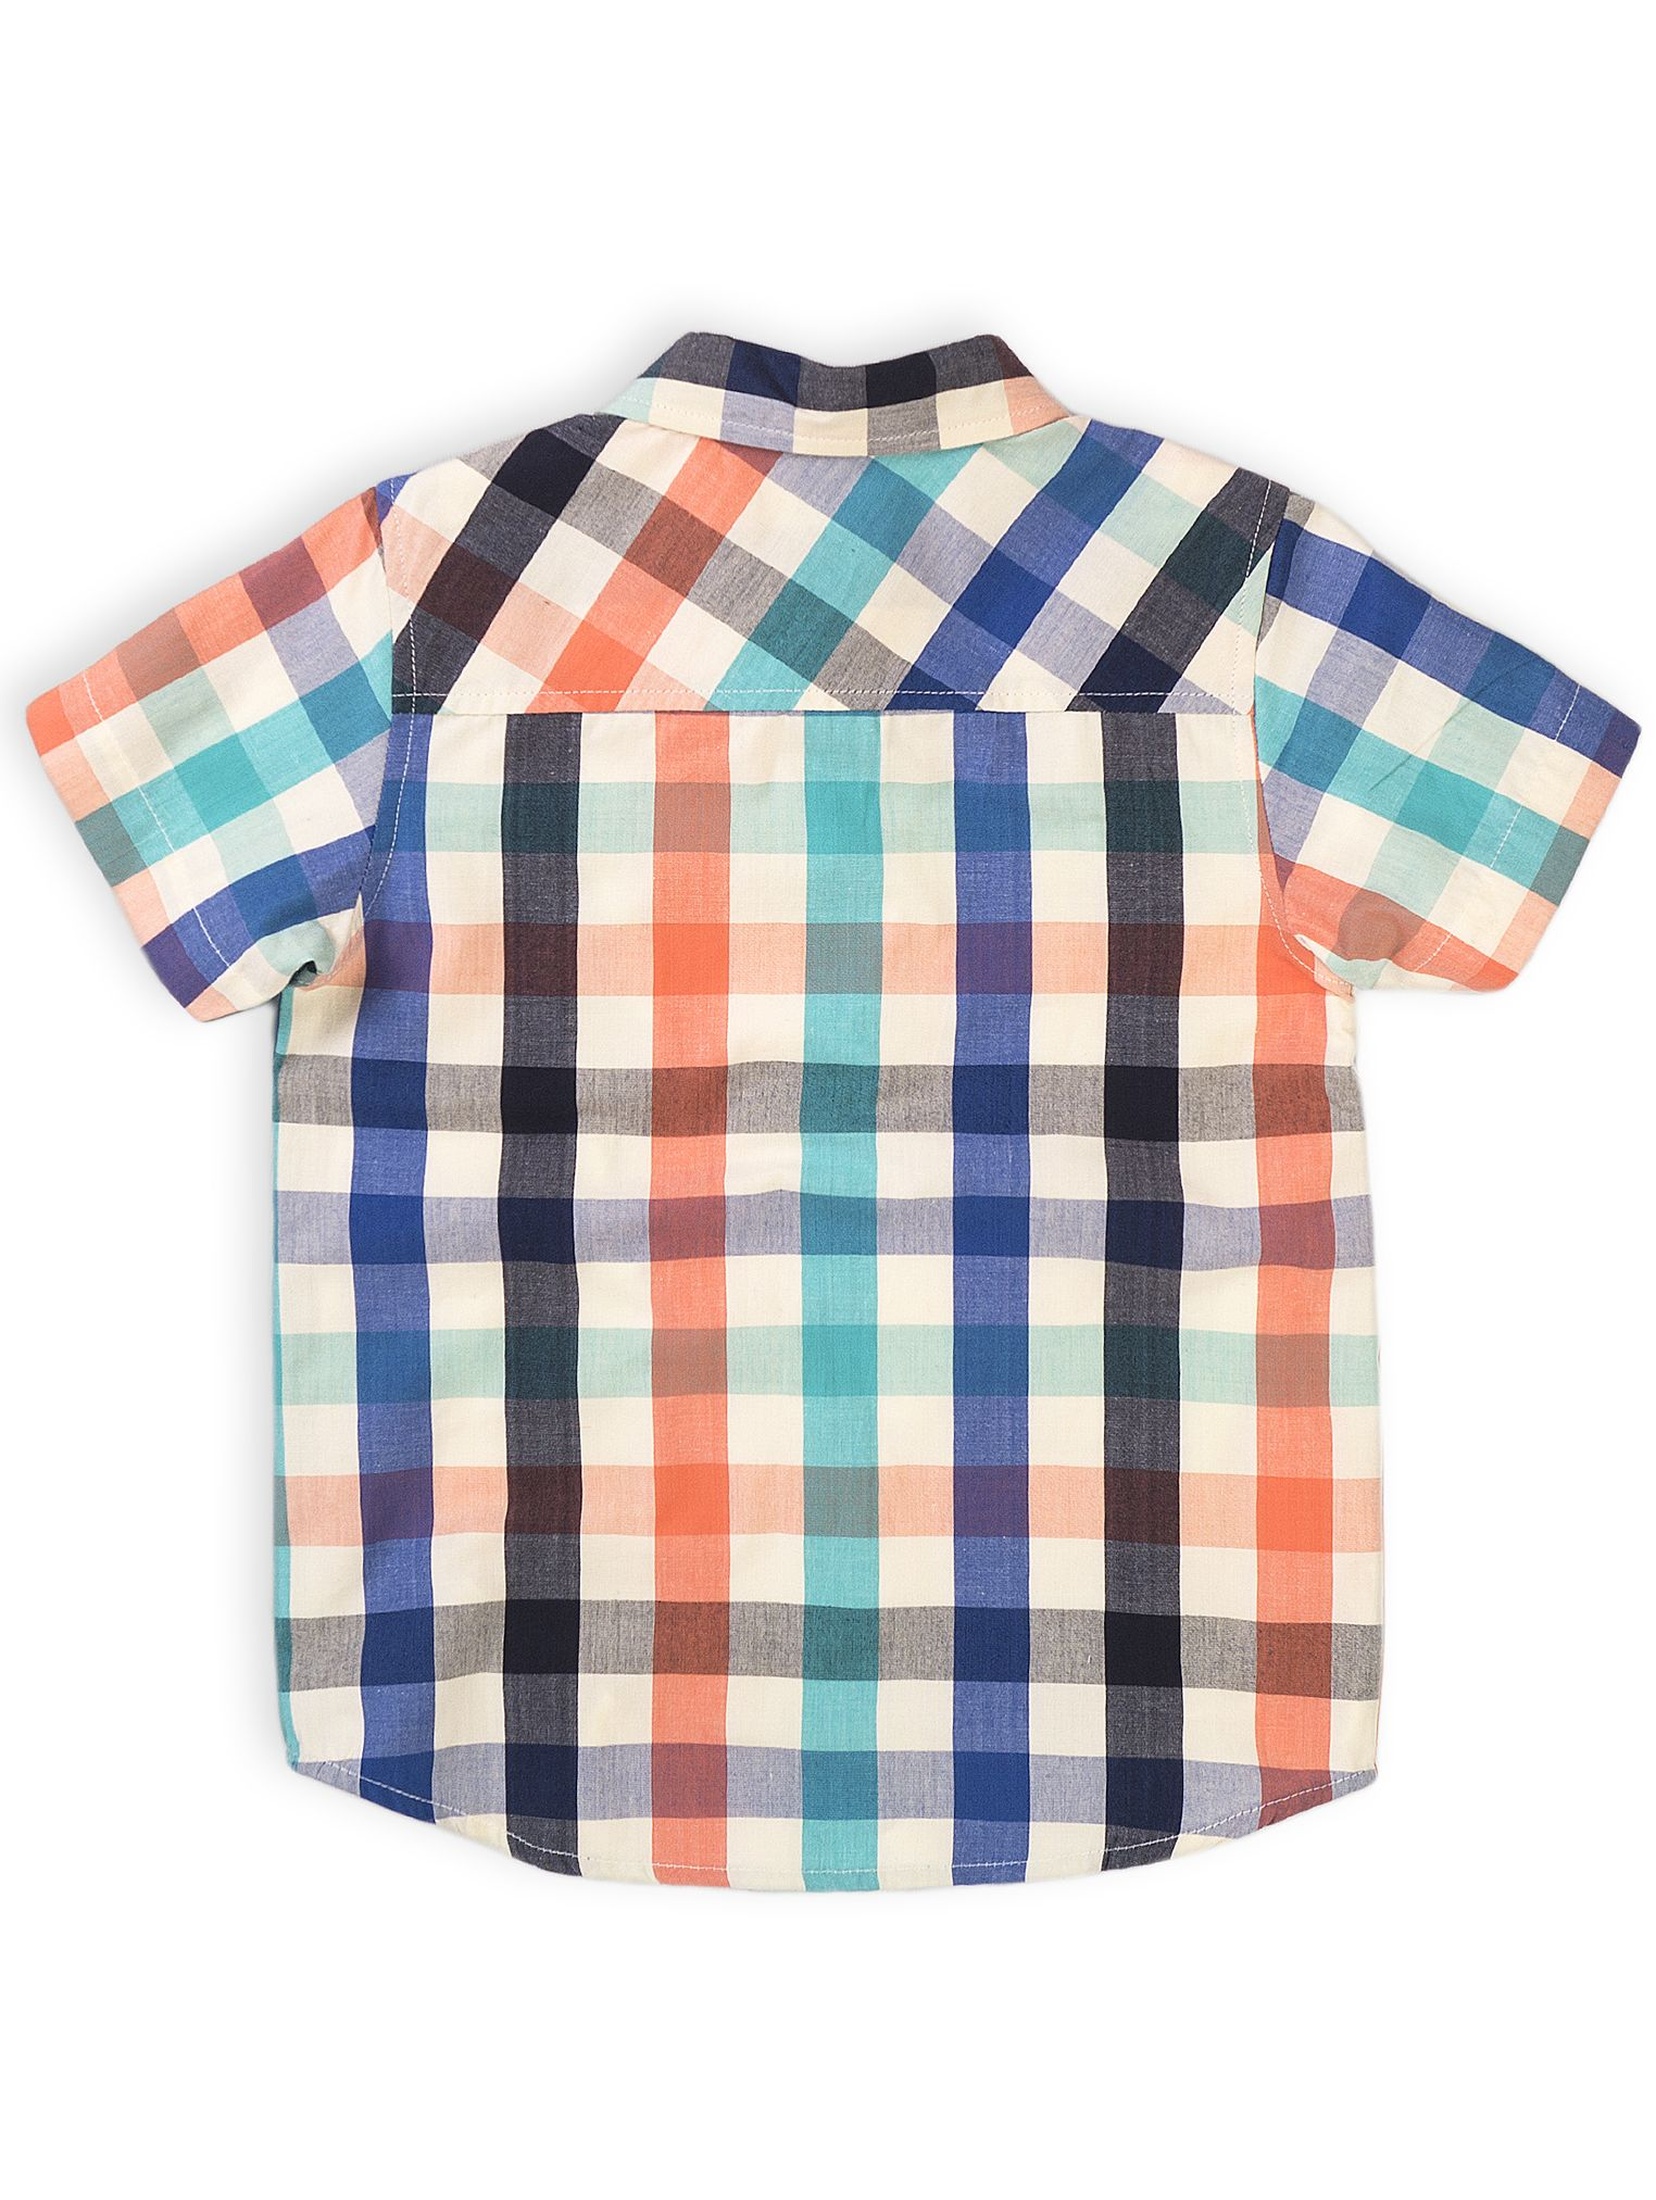 Bawełniana koszula chłopięca w kolorową kratkę